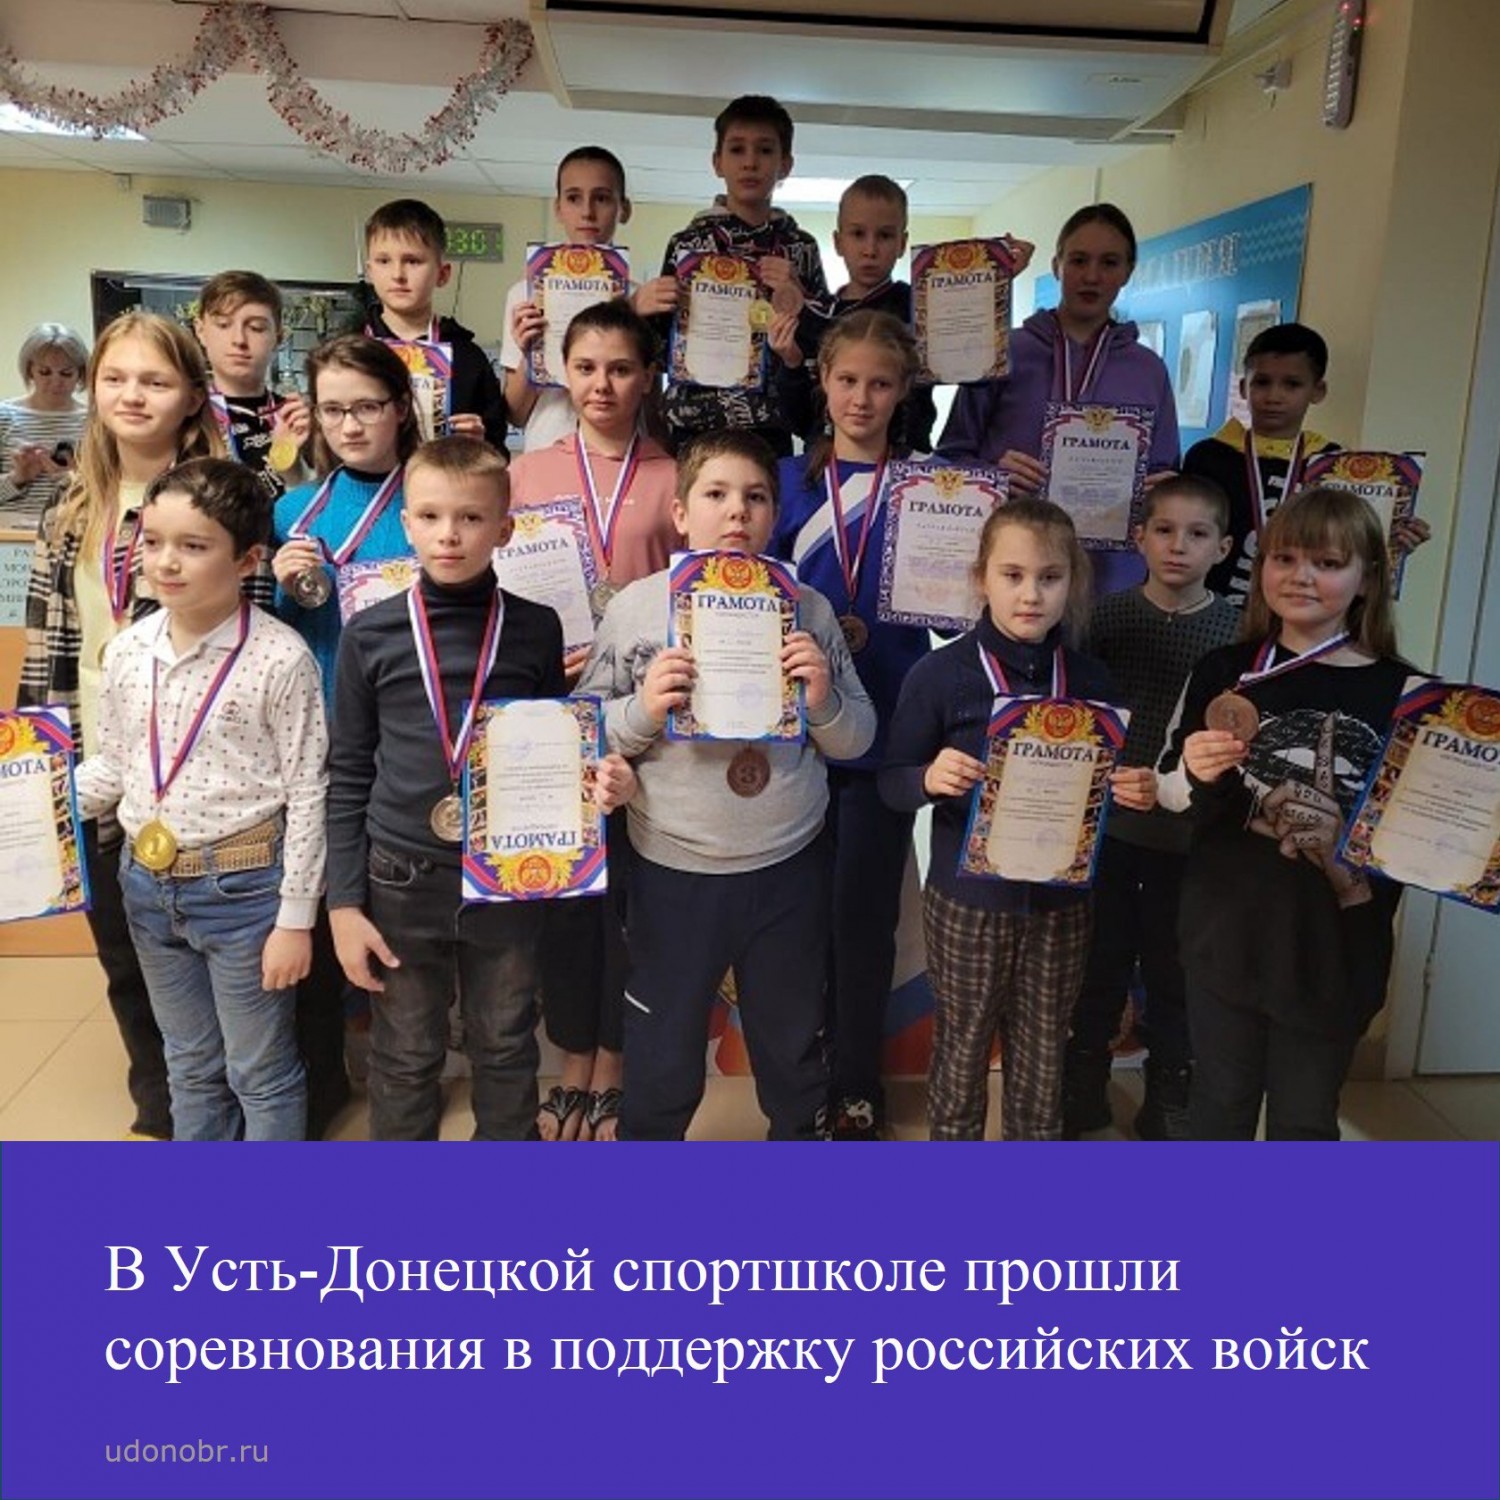 В Усть-Донецкой спортшколе прошли соревнования в поддержку российских войск